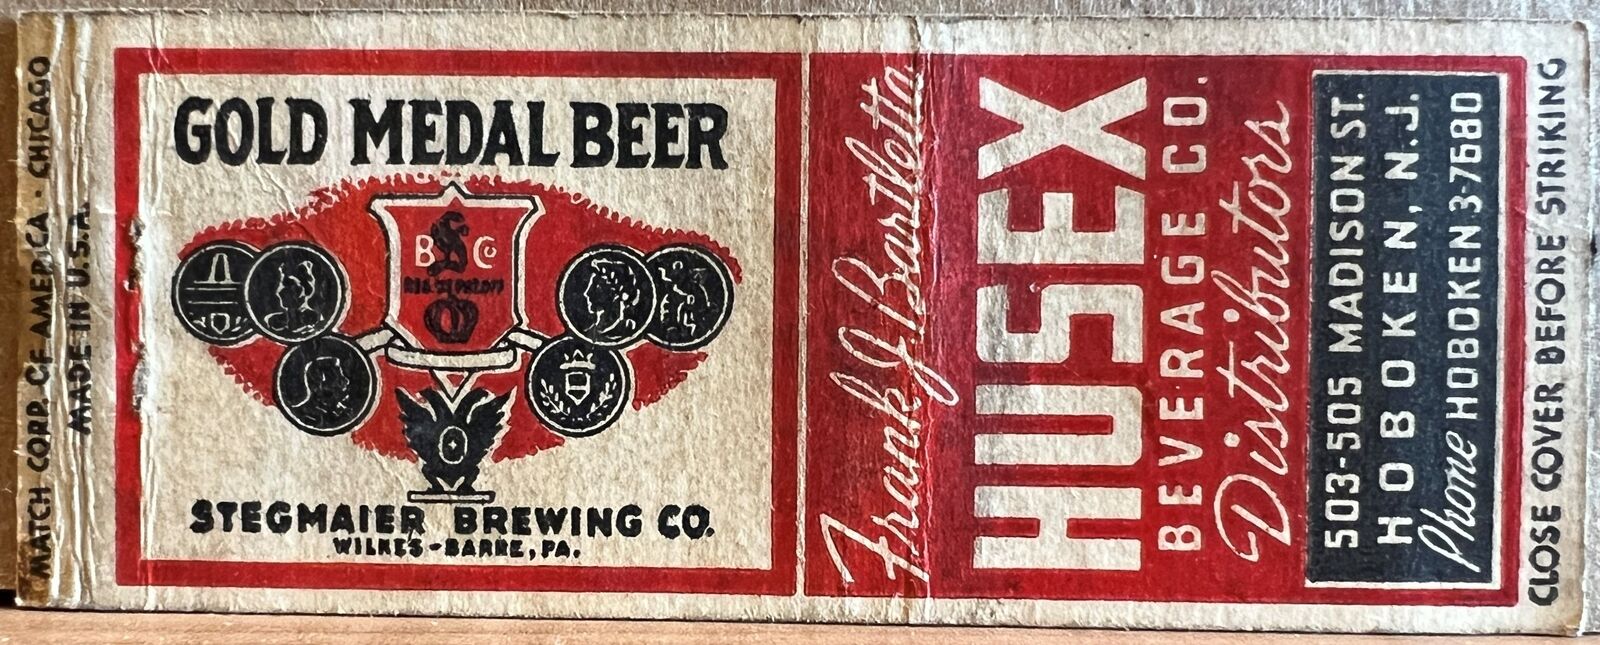 Husex Beverage Co Hoboken NJ Gold Medal Beer Vintage Bobtail Matchbook Cover